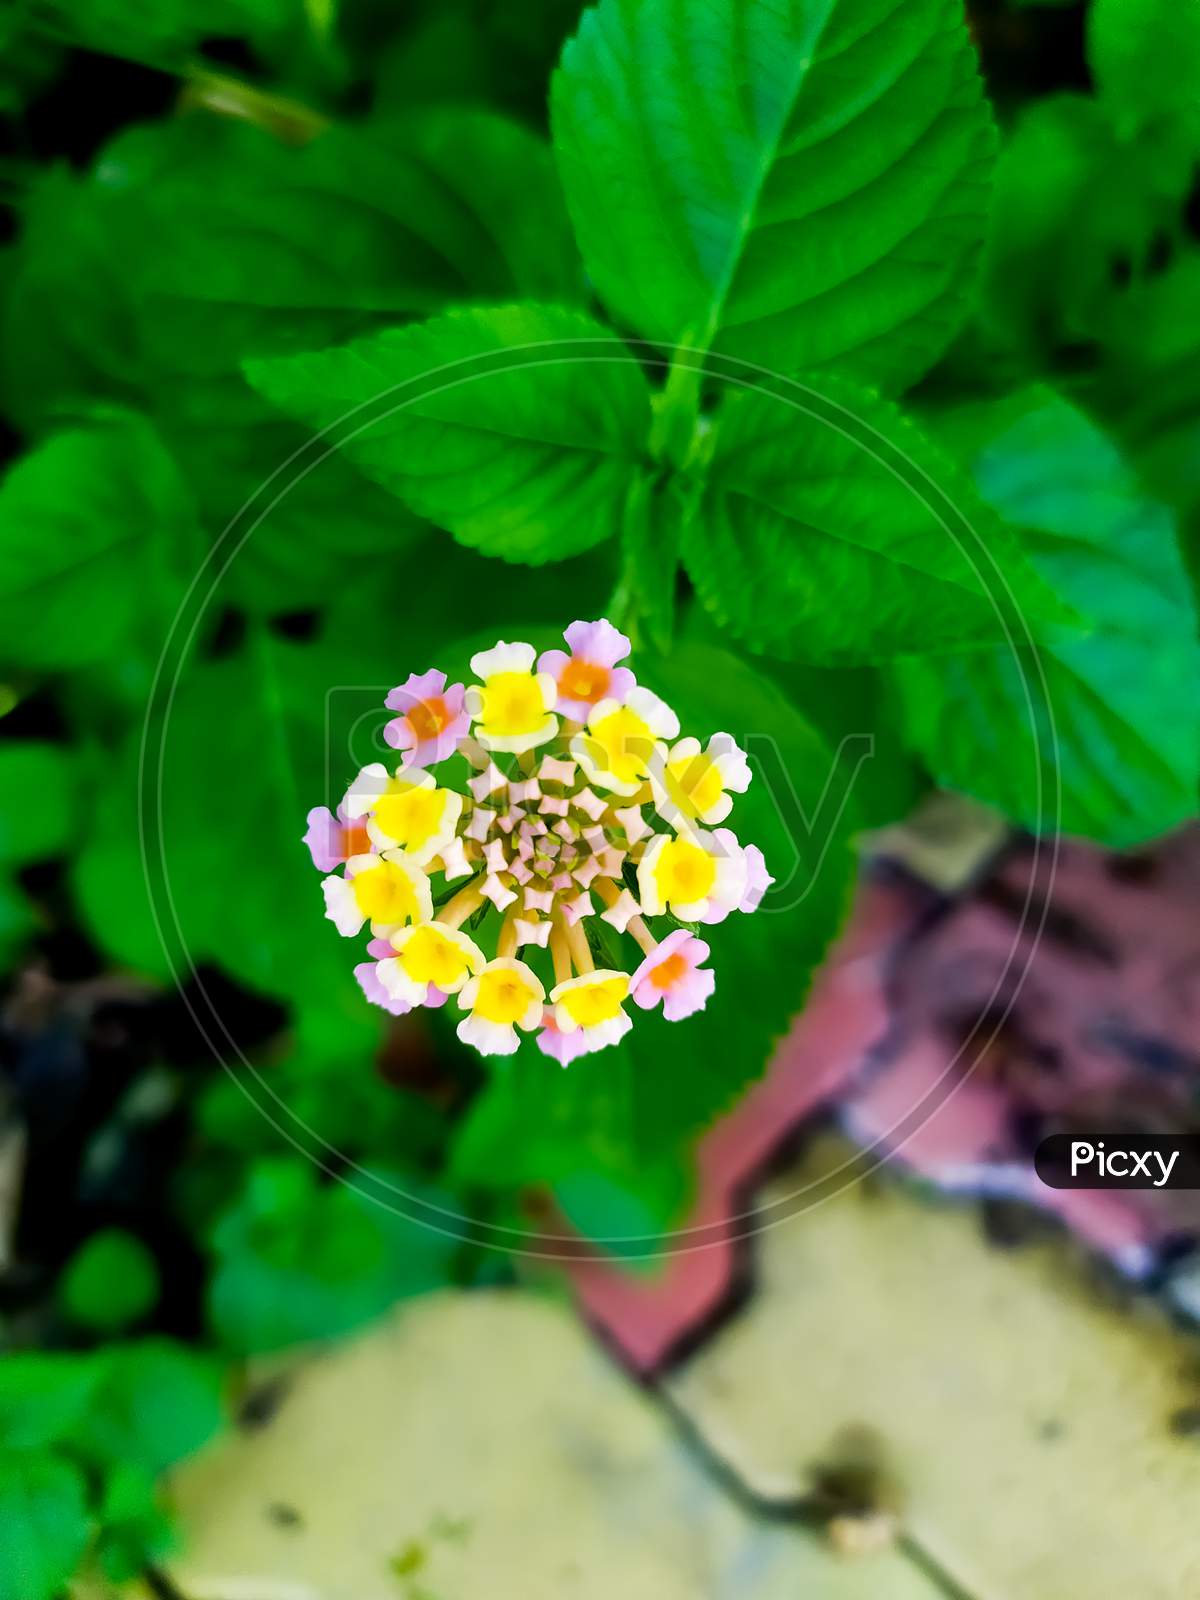 Lantana camara flower. common names are big-sage, wild-sage, red-sage, white-sage, korsu wiri or korsoe wiwiri, tickberry, West Indian lantana, umbelanterna and Gu Phool in Assam.